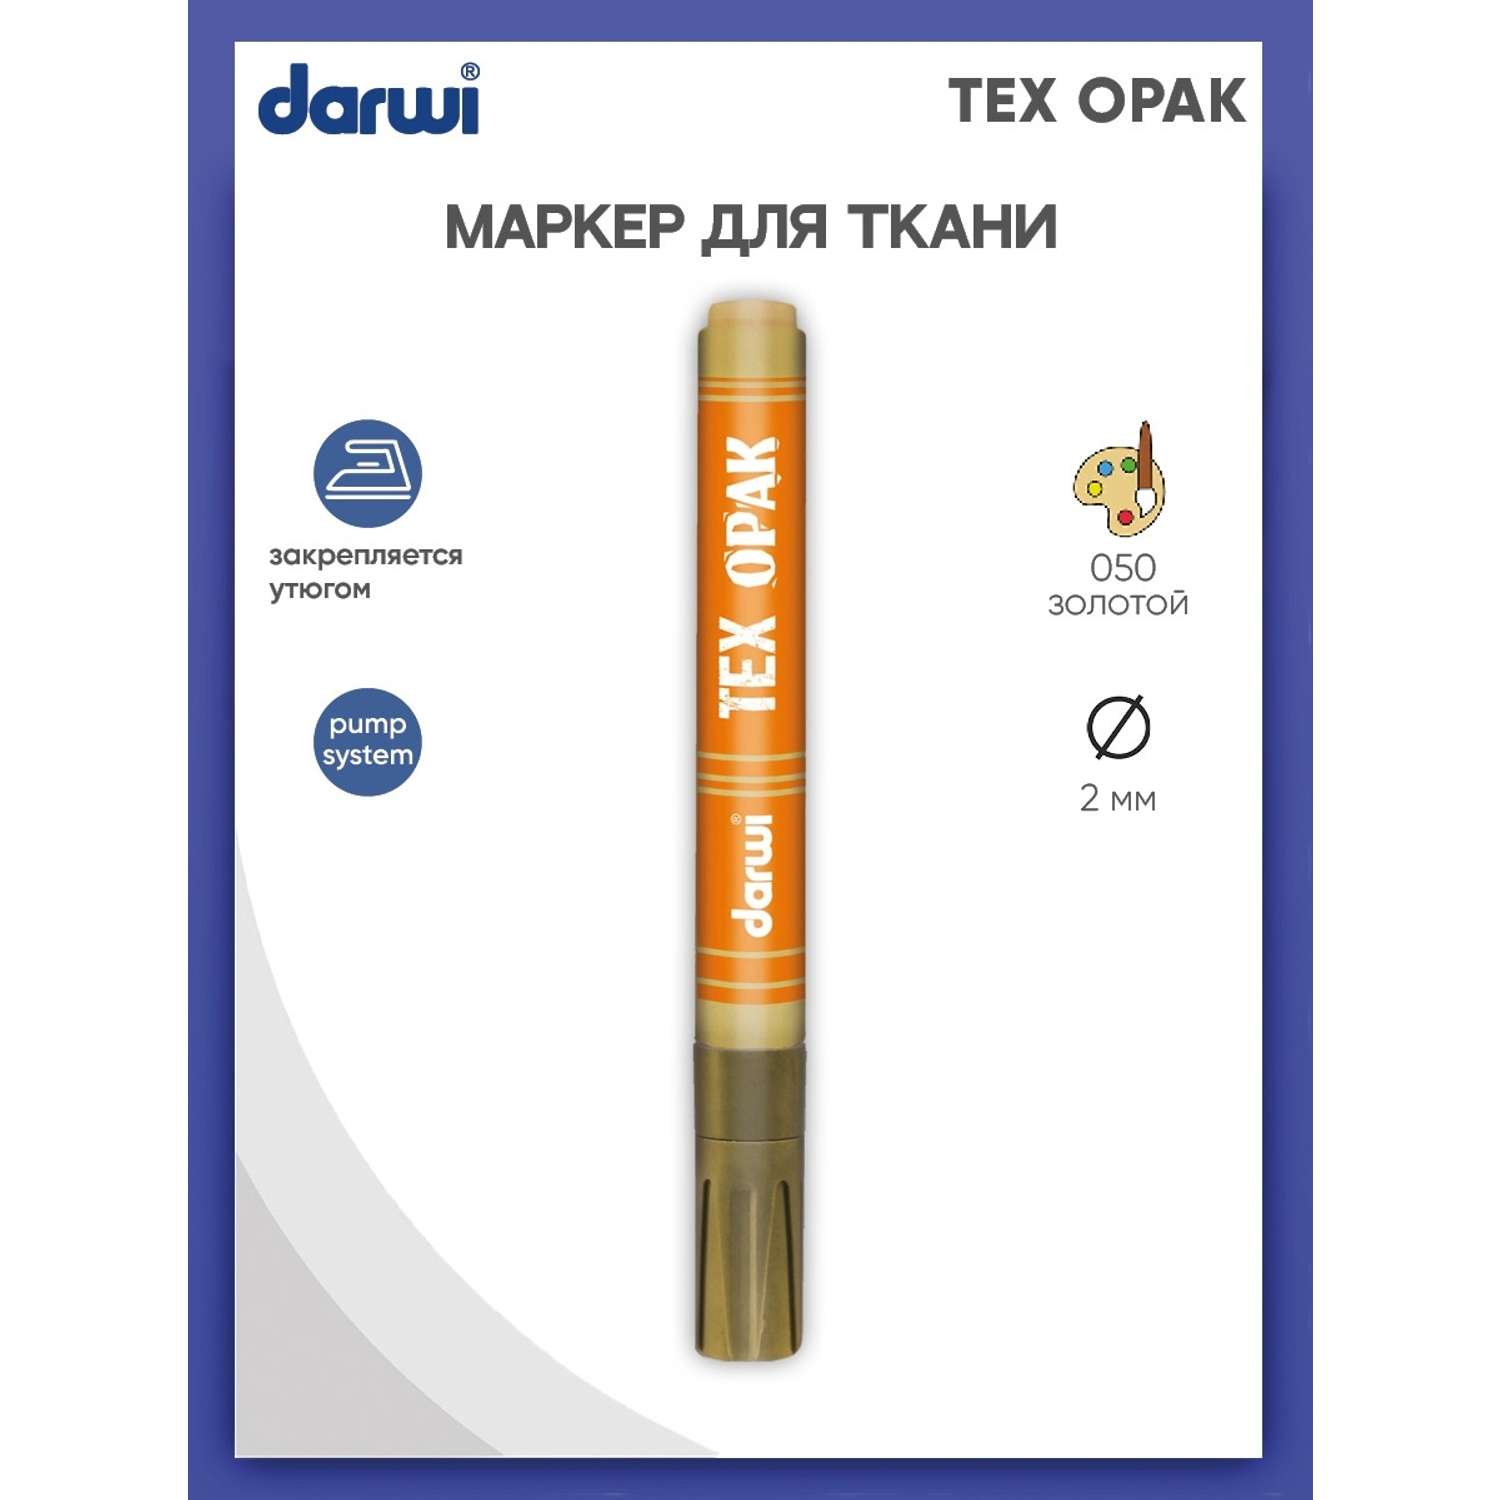 Маркер Darwi для ткани TEX OPAK DA0160013 2 мм укрывистый 050 золотой - фото 1